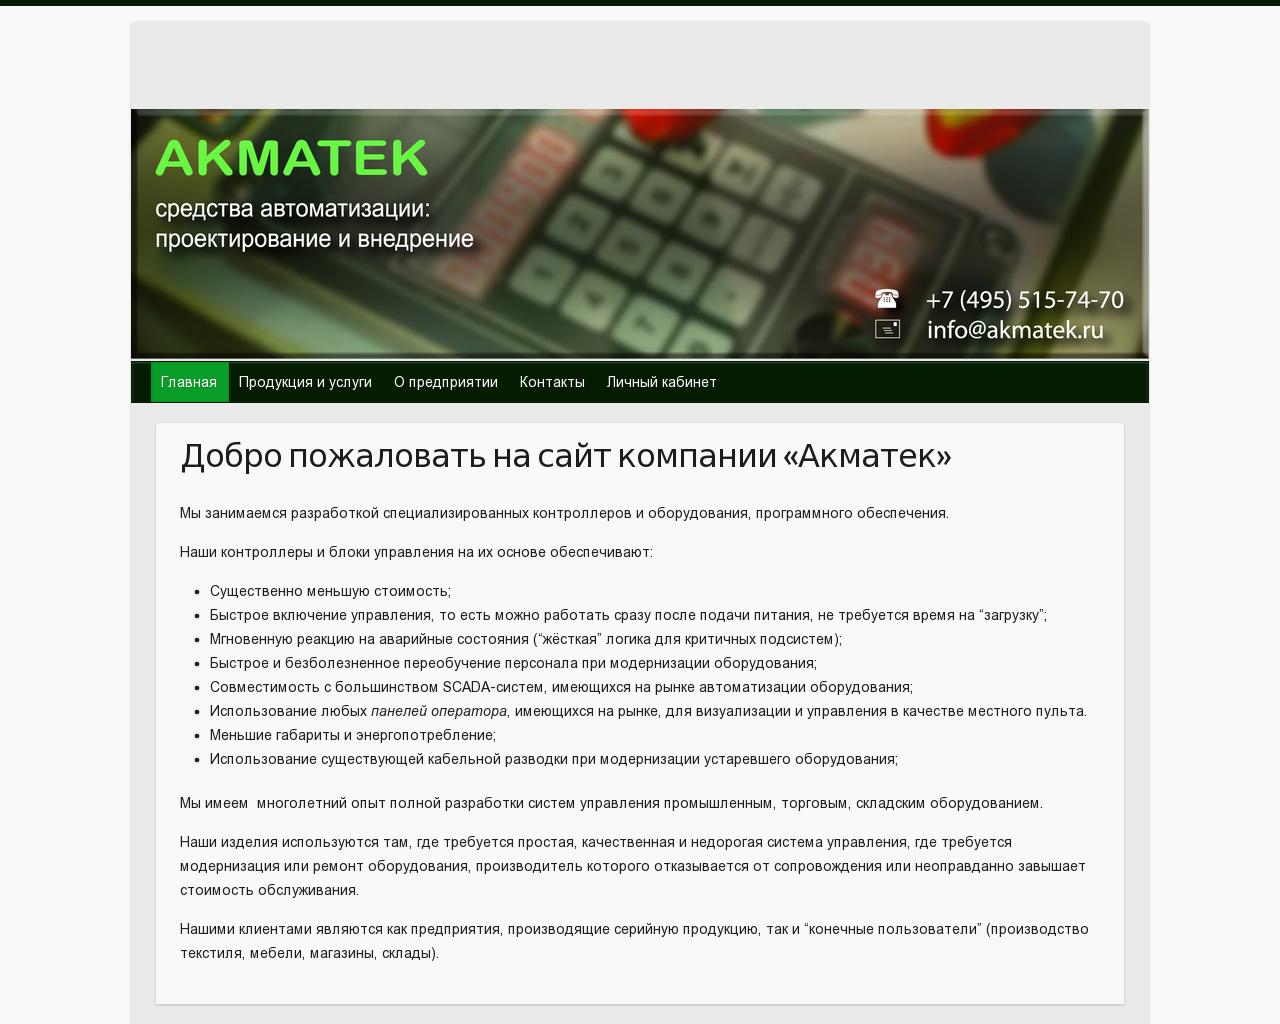 Изображение сайта akmatek.ru в разрешении 1280x1024